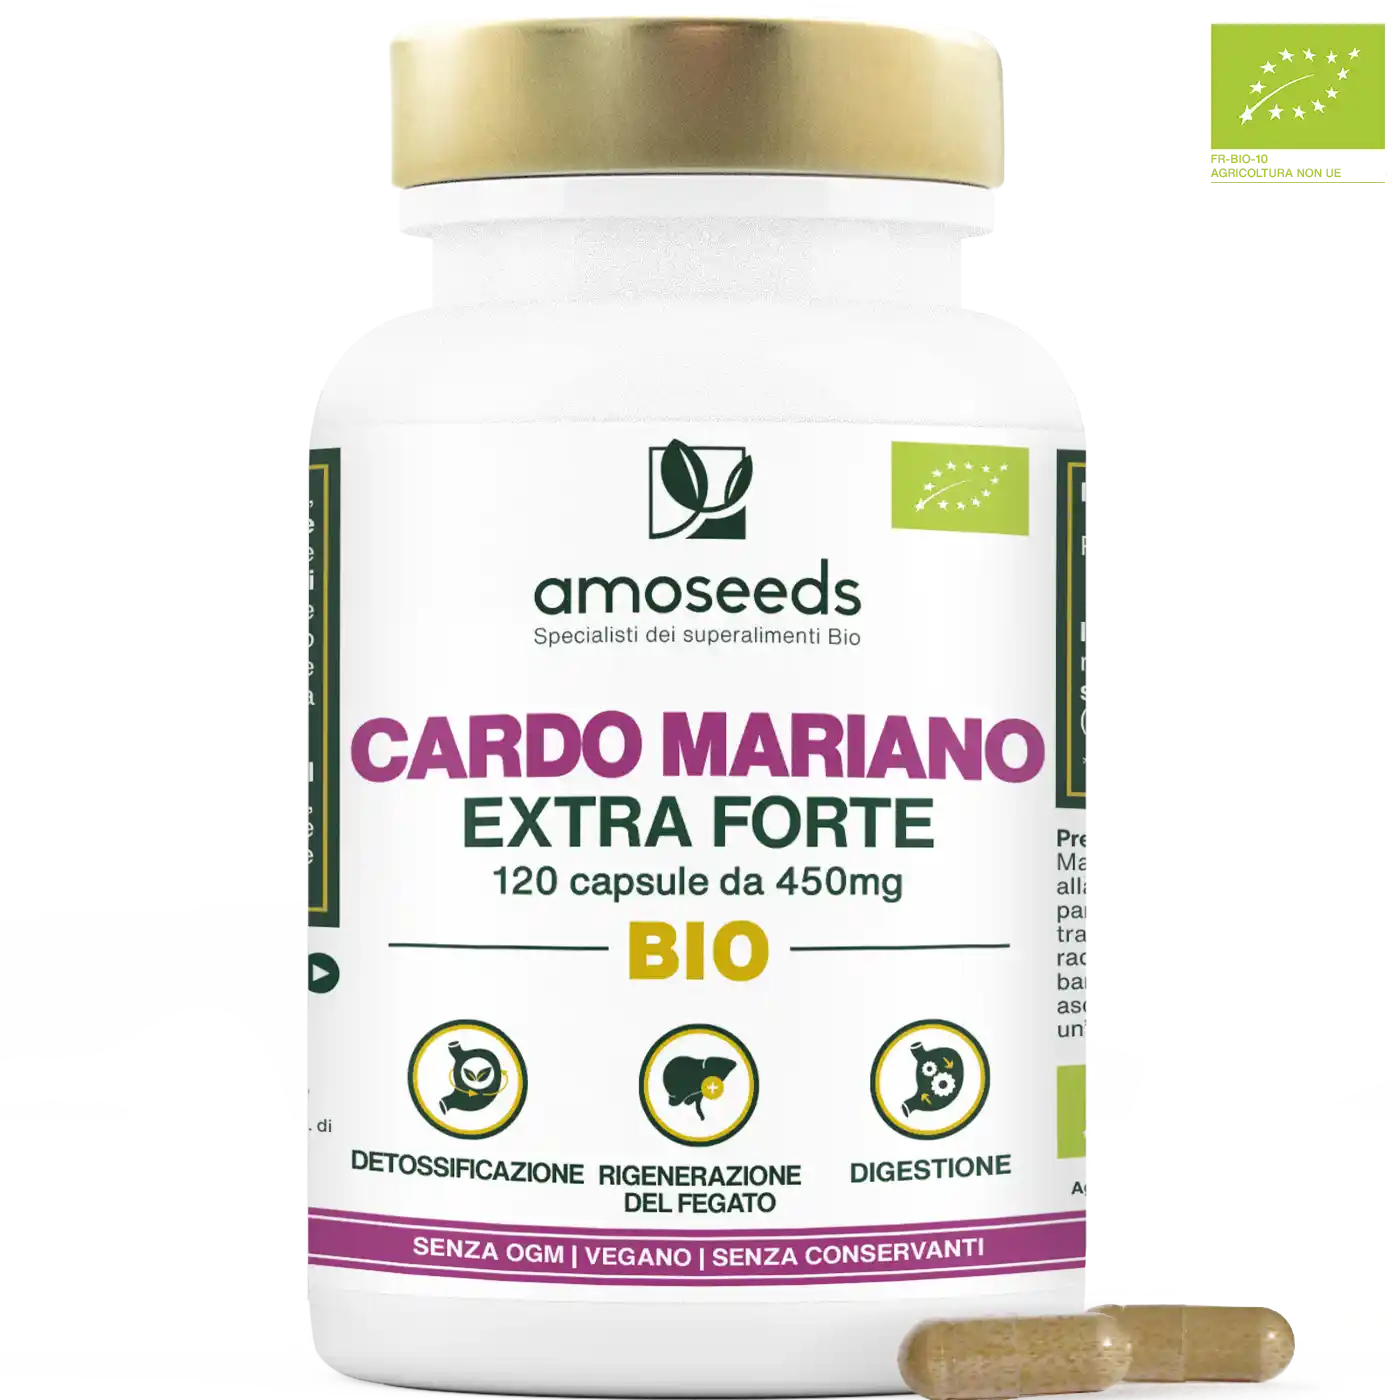 Cardo mariano bio capsule amoseed specialisti dei superalimenti bio